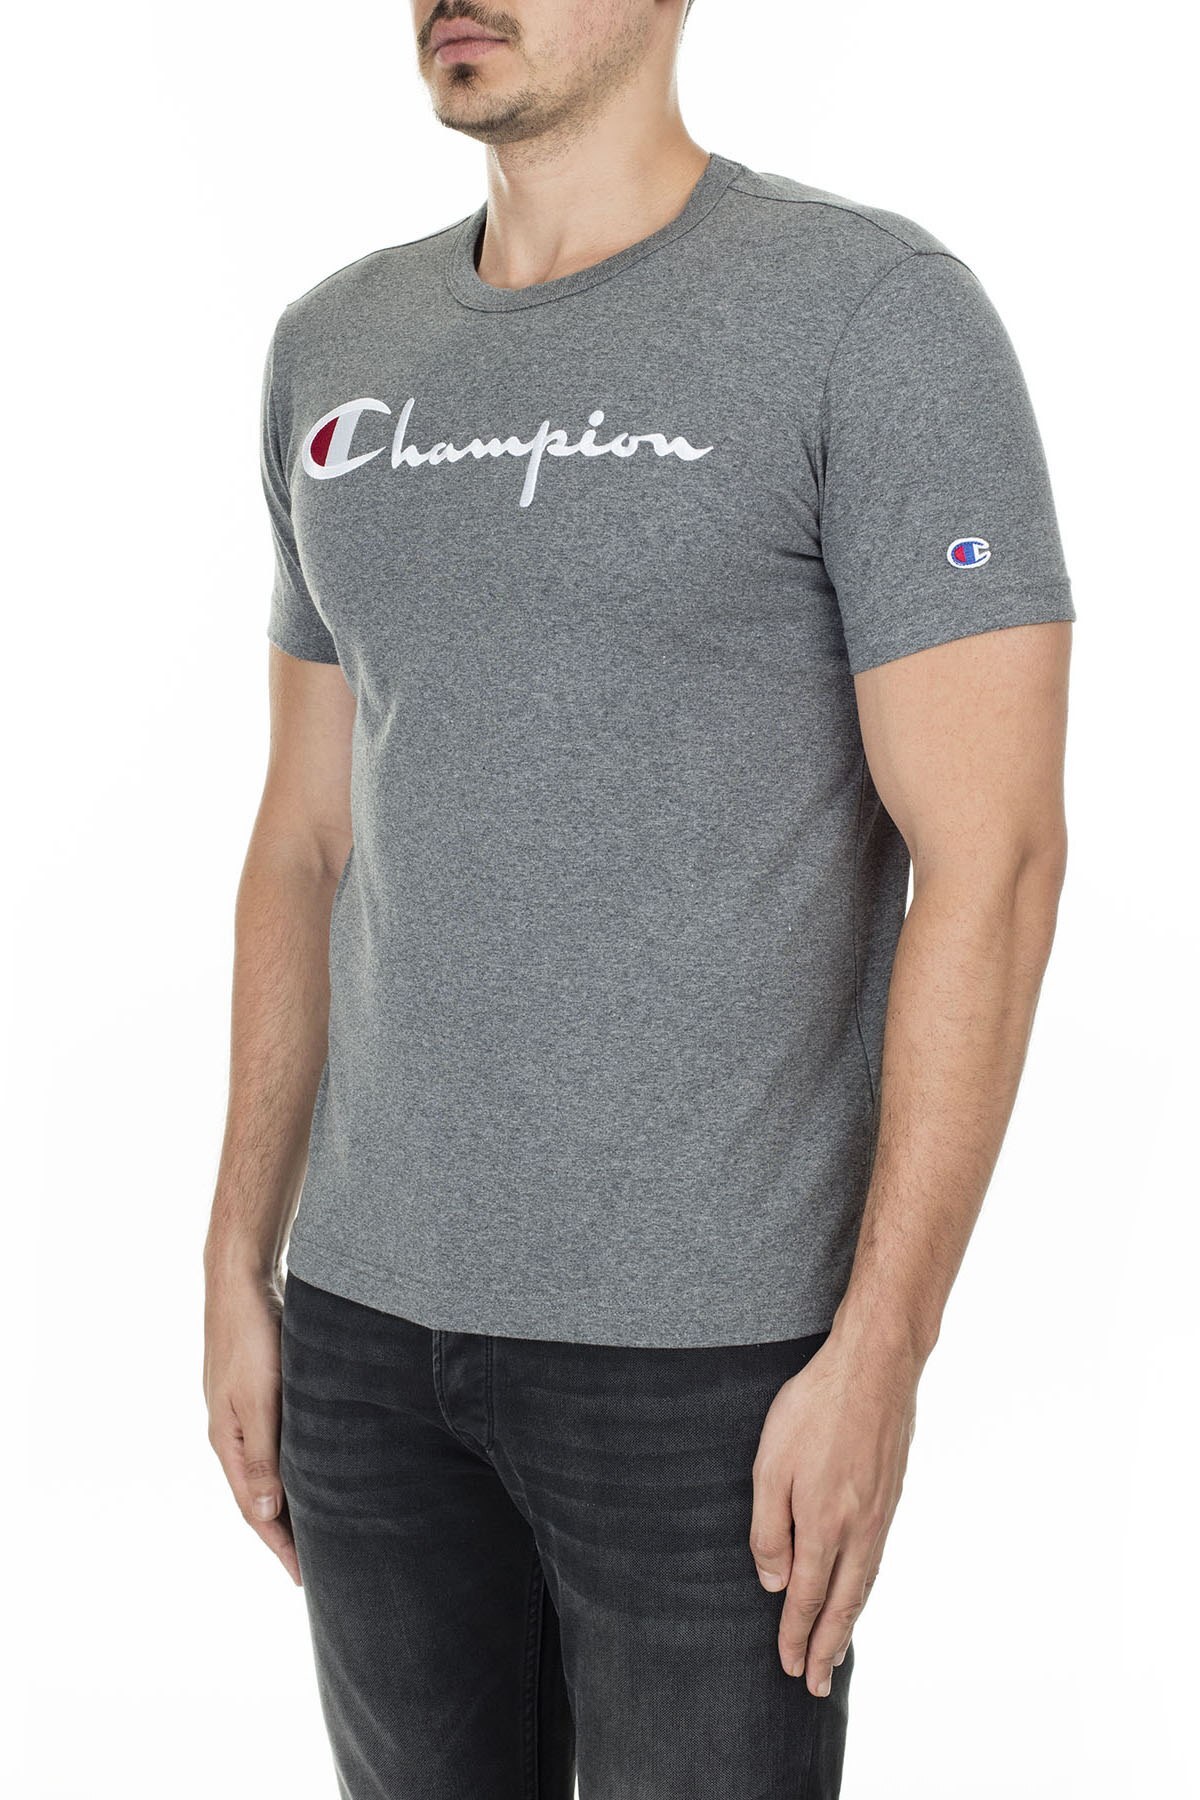 Champion Erkek T Shirt 210972 EM519 GAHM KOYU GRİ